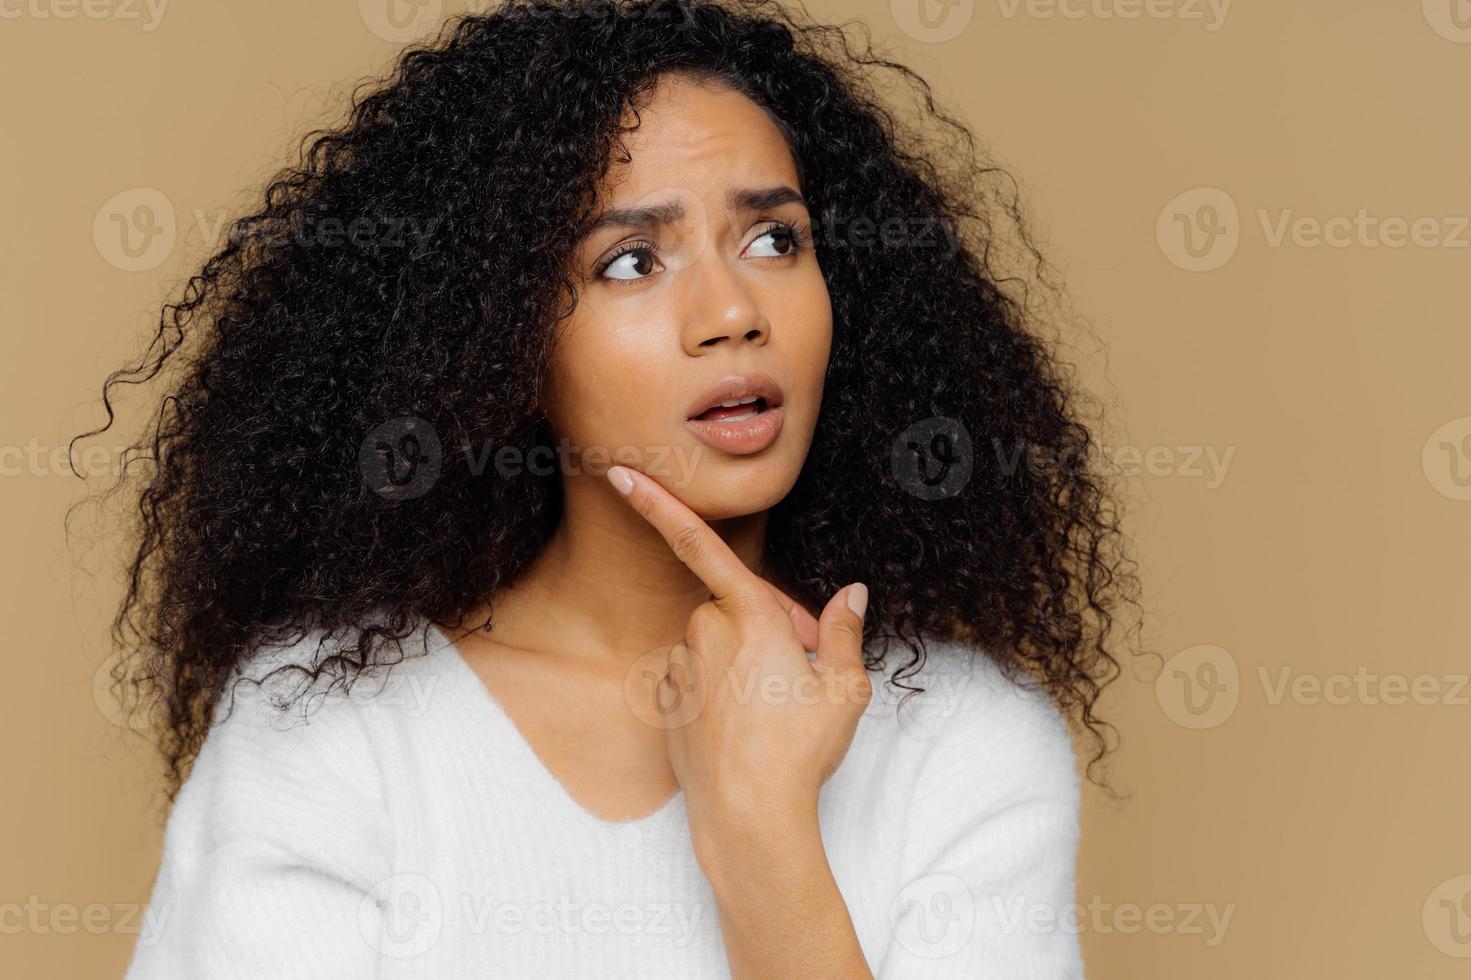 verbaasd vrouwelijk model houdt de vinger op de kin, kijkt bedachtzaam opzij, heeft gefrustreerde gezichtsuitdrukking, krullend afro-haar, draagt een casual witte trui, geïsoleerd over bruine achtergrond. Close-up shot foto